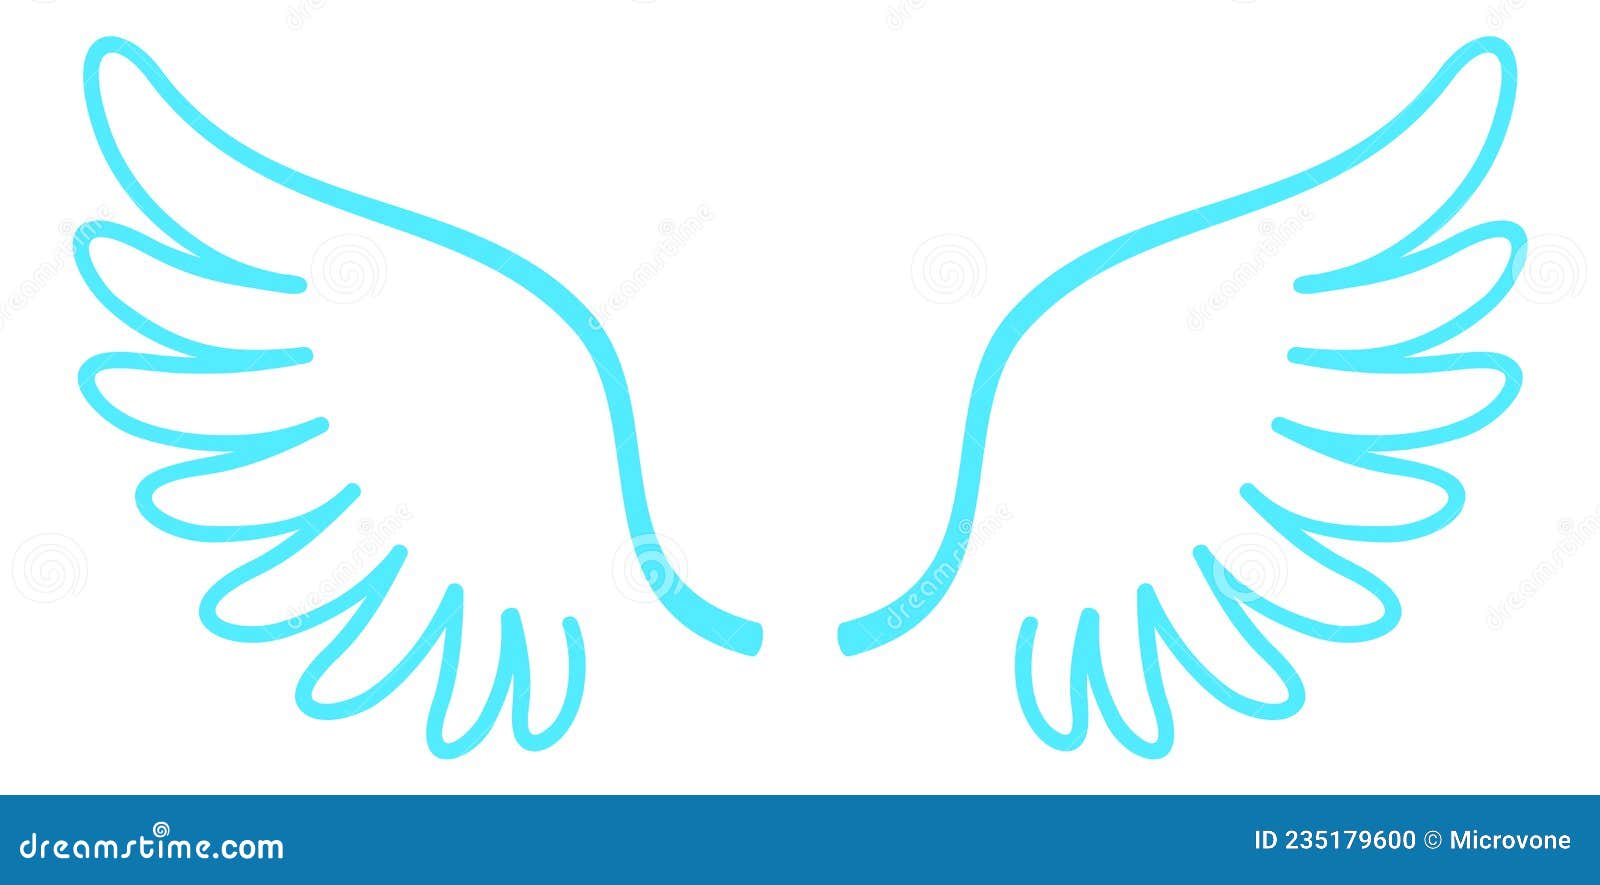 Logotipo Das Asas. Desenho Animado. Símbolo De Pureza E Voo Ilustração do  Vetor - Ilustração de liberdade, curva: 254434680